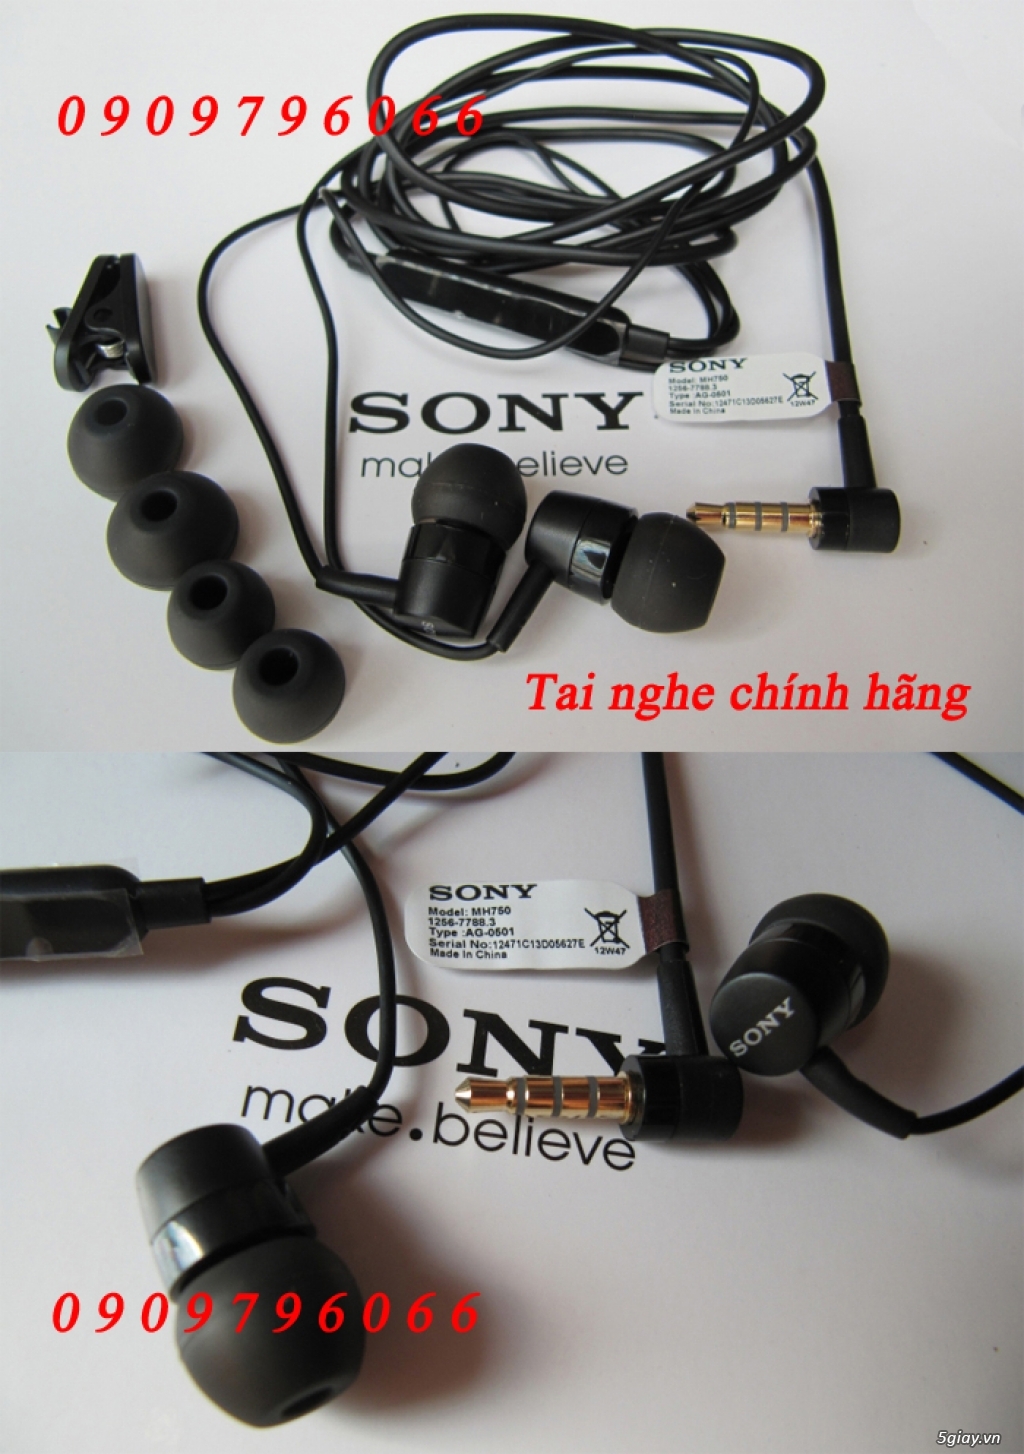 PKSTORE.VN >>> Tai nghe - Sạc - Cáp: HTC | APPLE | SamSung | Sony | LG| LUMIA| Beats...chính hãng<<< - 42